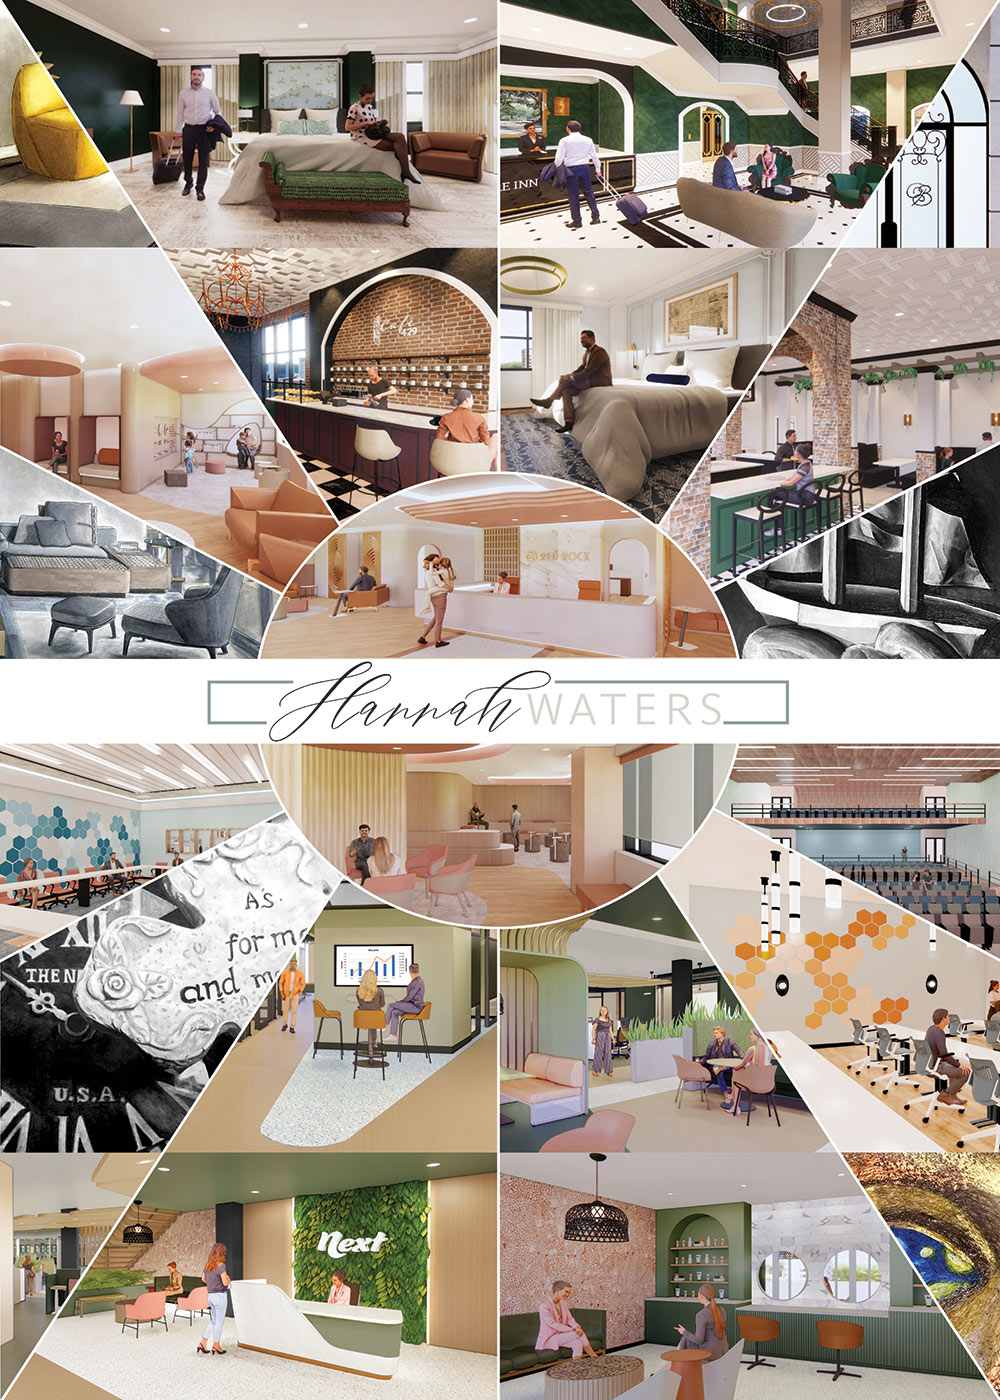 Hannah Waters' interior design senior exhibit board